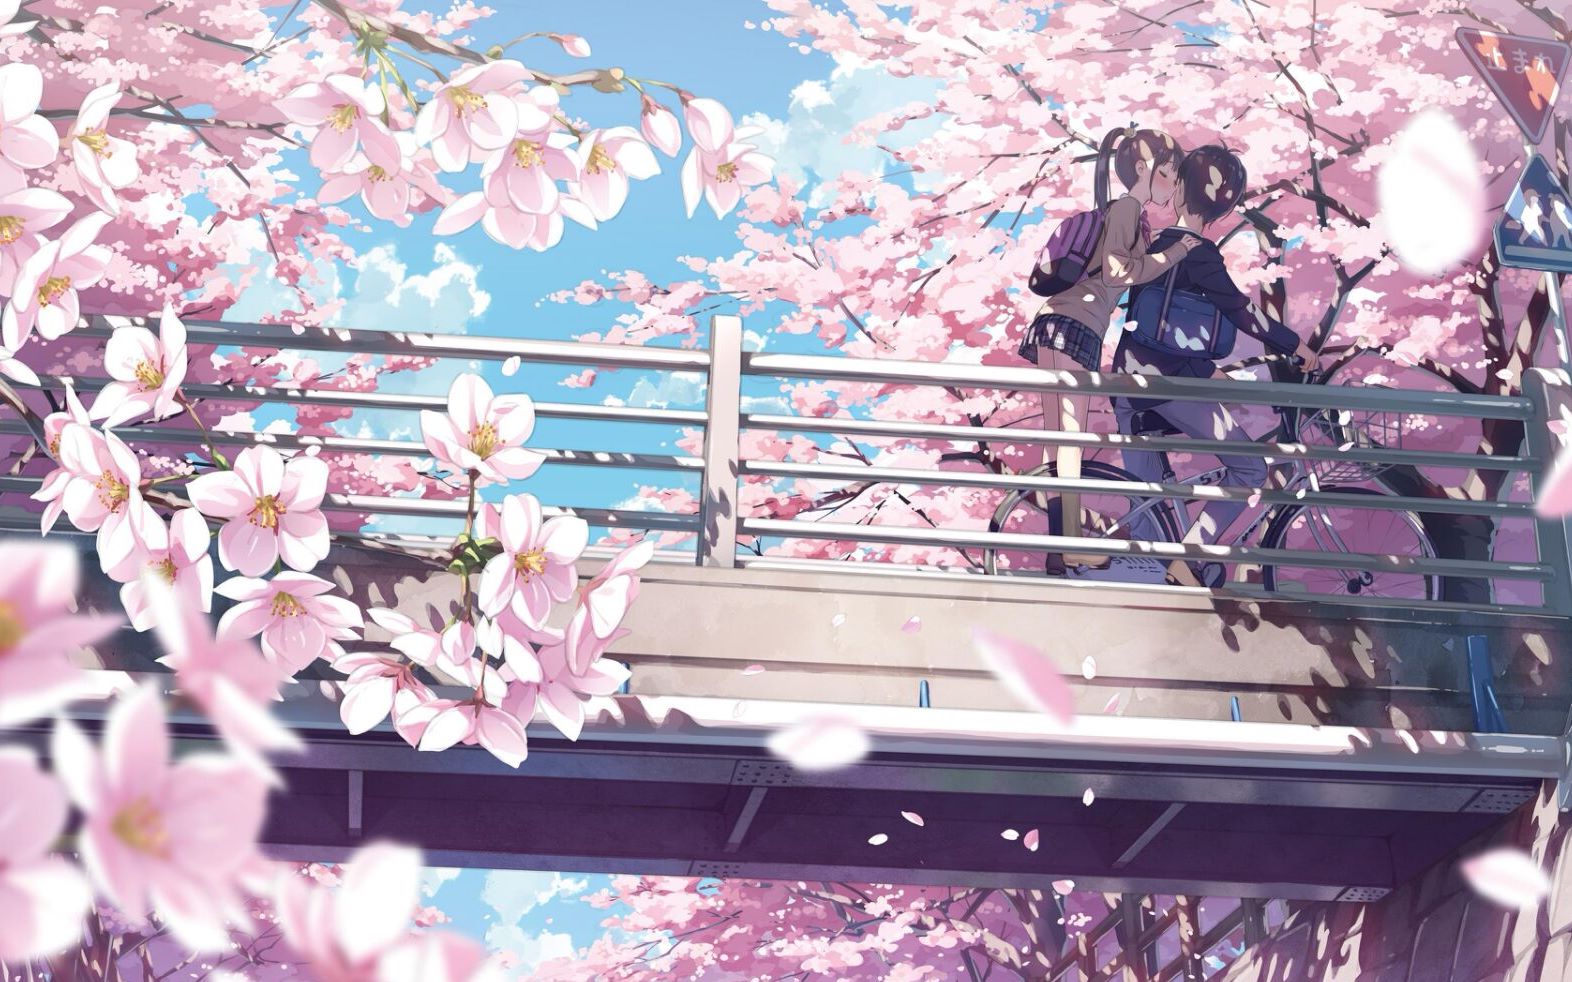 Anime hoa anh đào lãng mạn